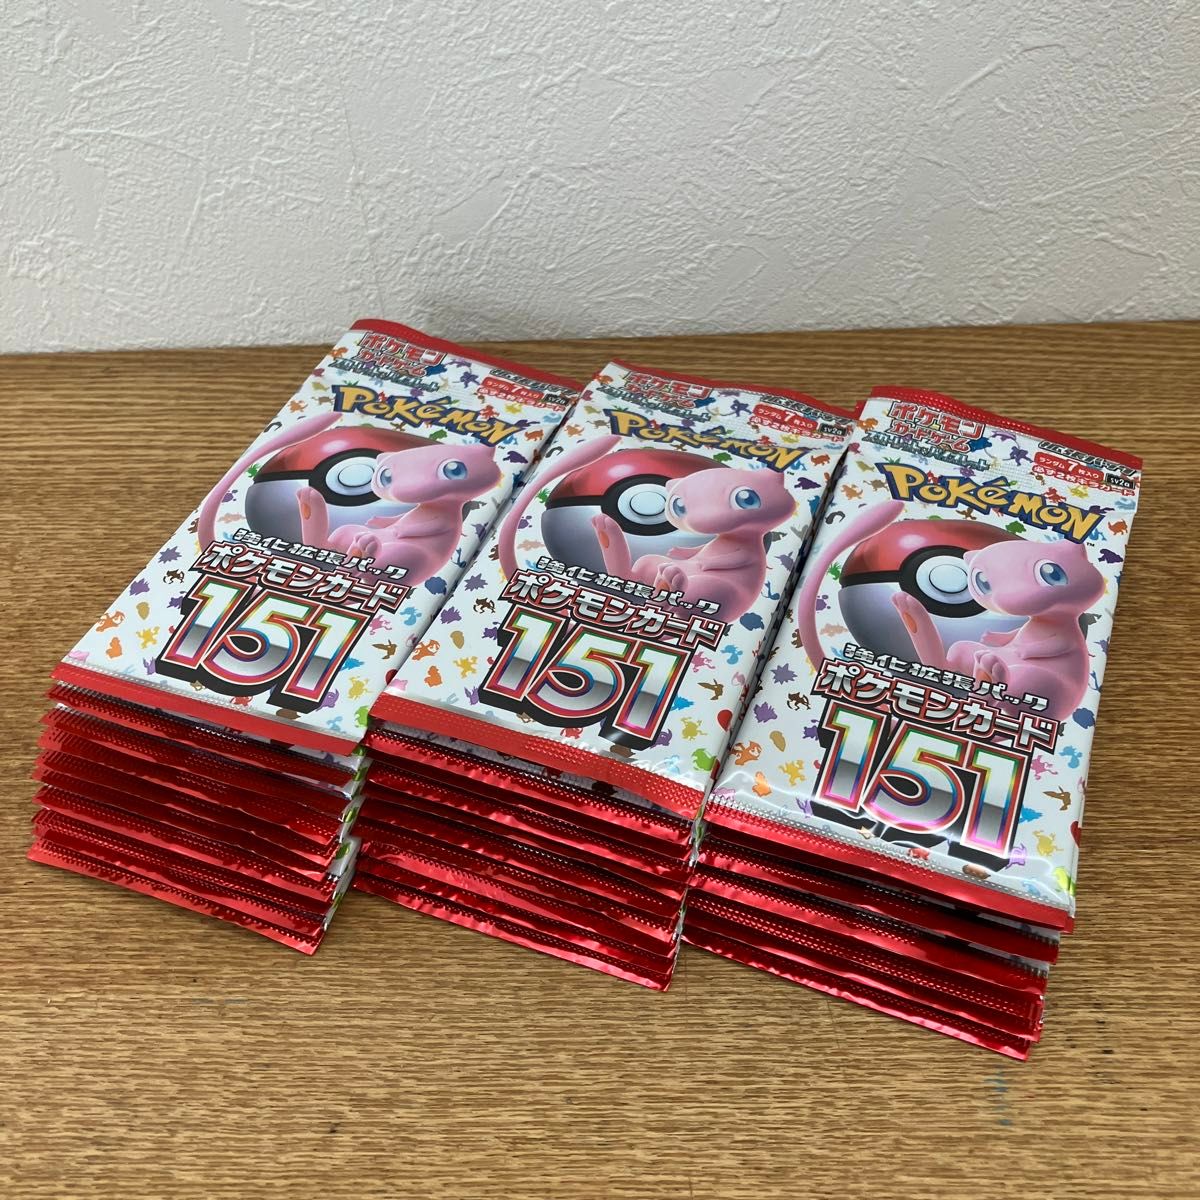 販促販売 ポケモンカードゲーム サーチ済パック 150パックセット | www